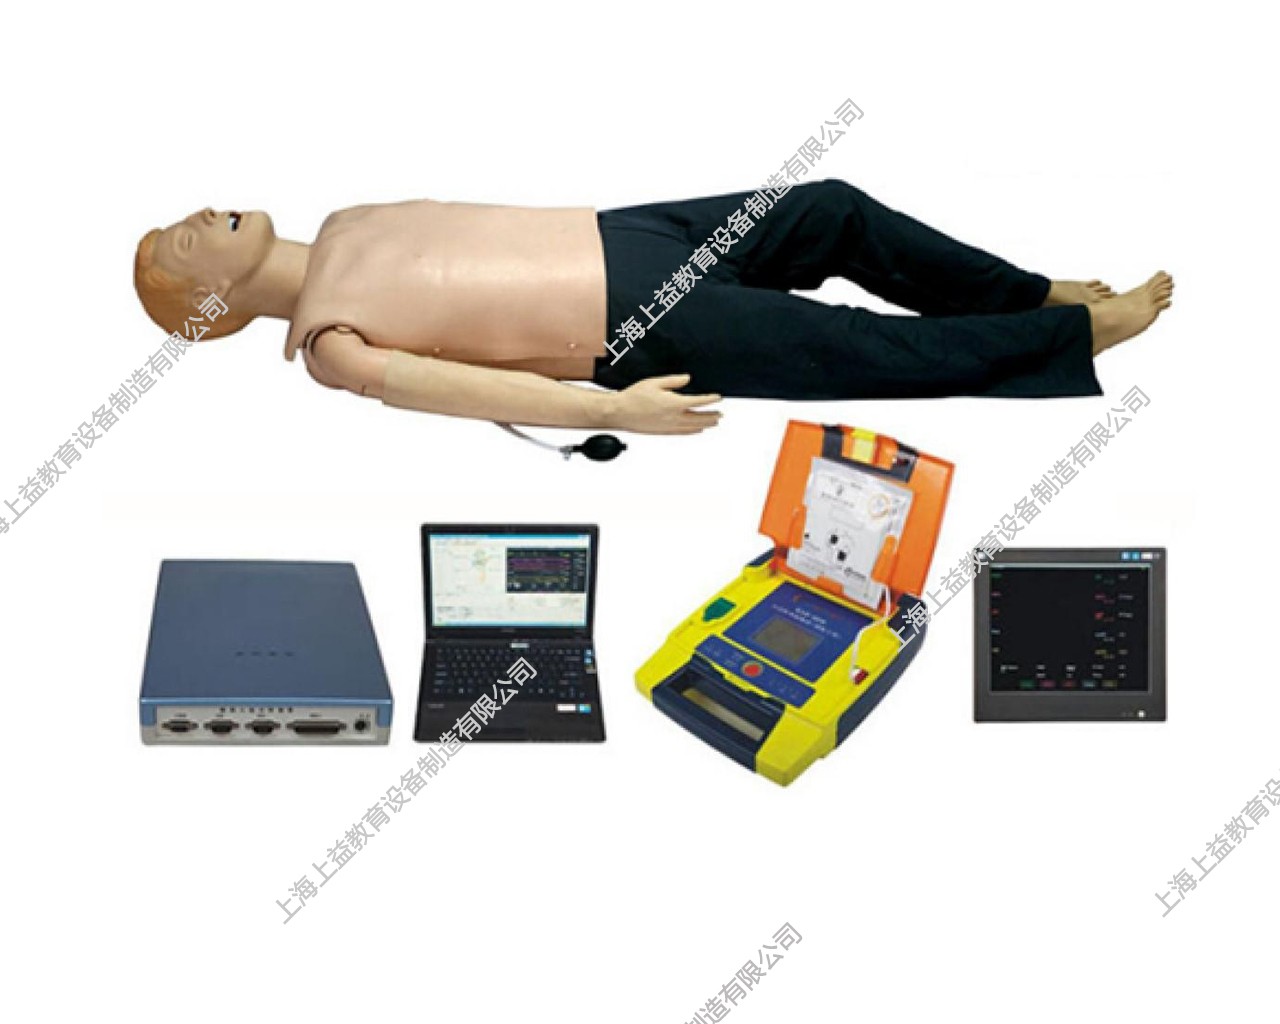 EM9108	高智能数字化综合急救技能训练系统（ACLS高级生命支持、计算机软件控制）